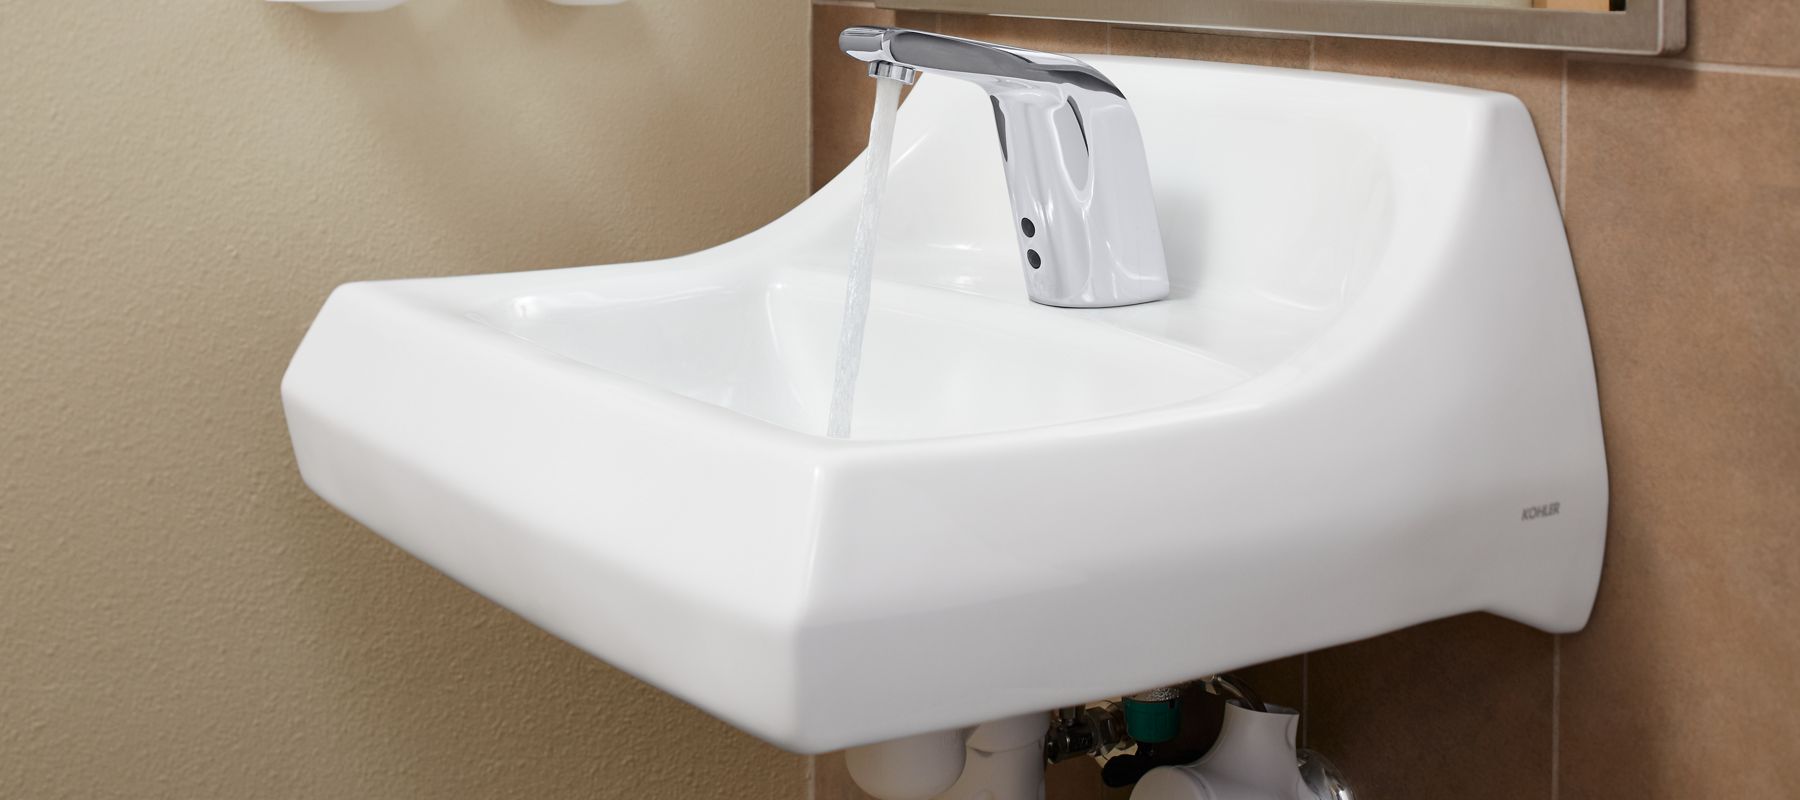 kohler commercial bathroom sinks